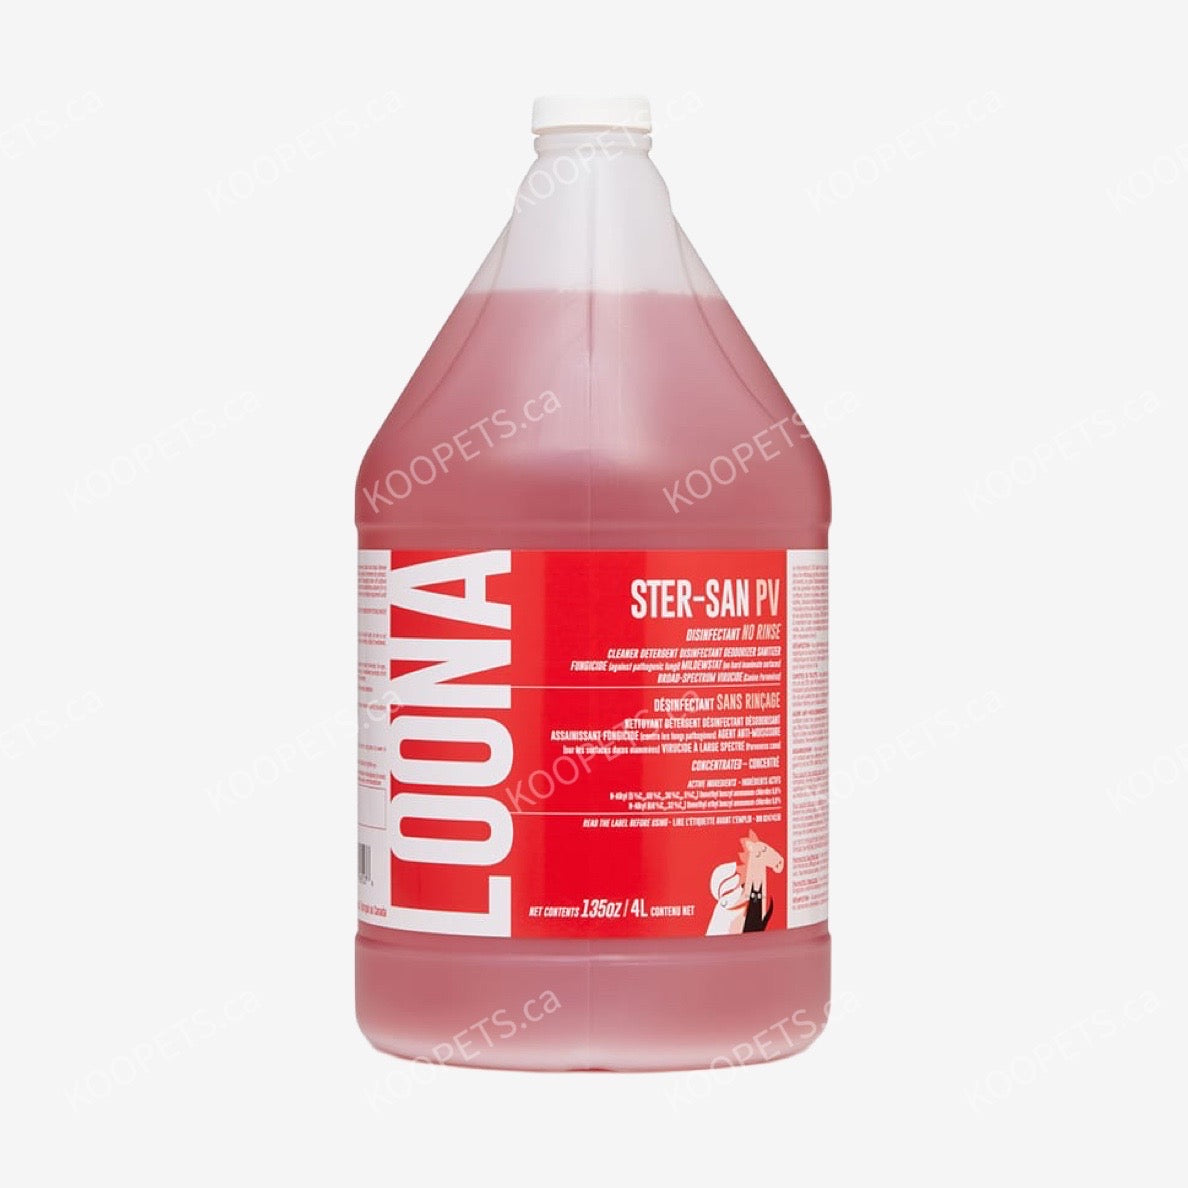 LOONA | 猫癣/细小/新冠 - 杀菌浓缩液/喷雾(红瓶)